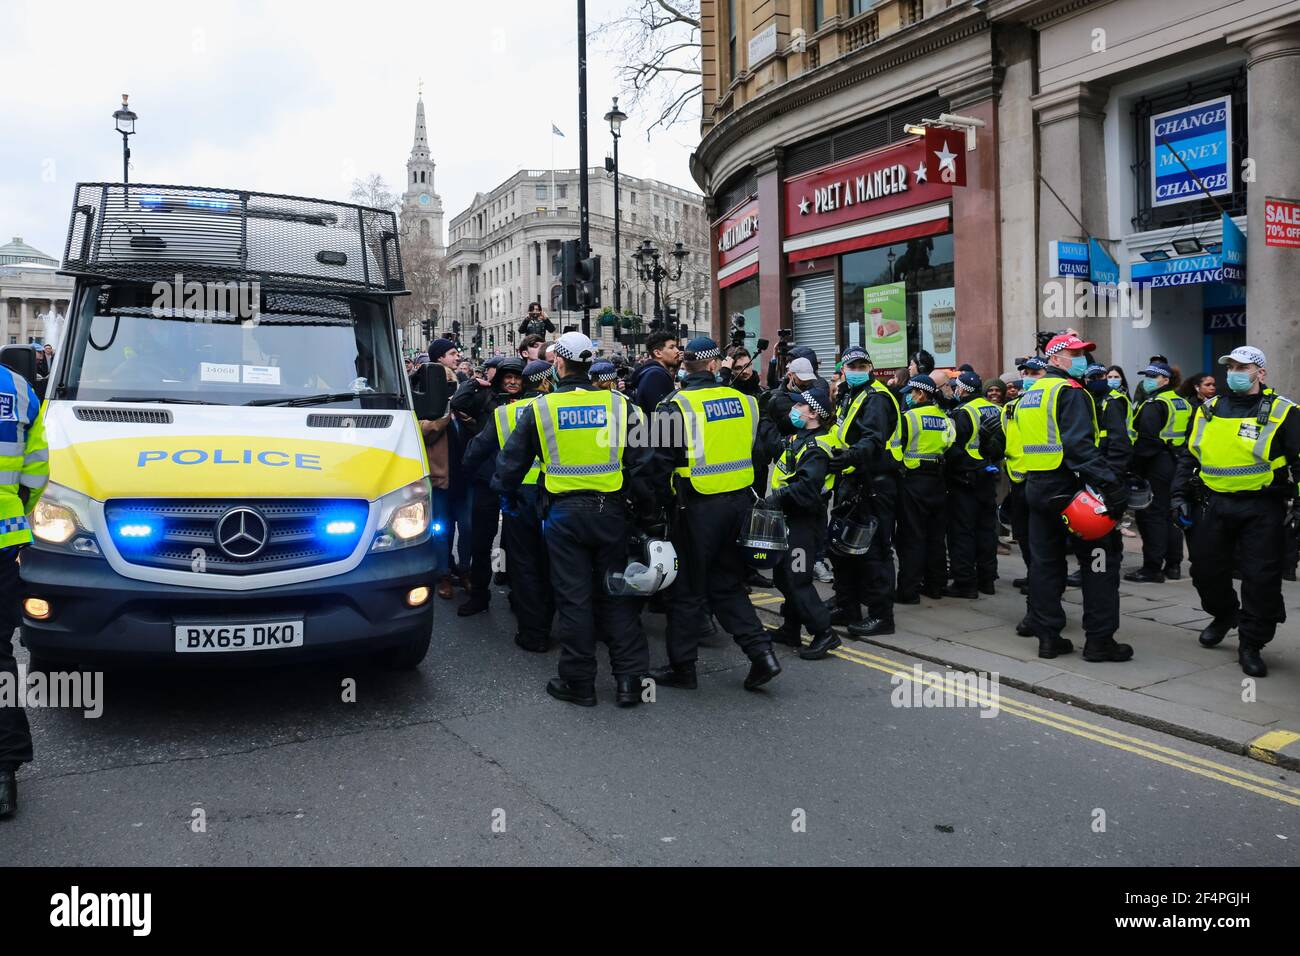 Londres, Royaume-Uni. 20 mars 2021. Manifestation anti-verrouillage à Trafalgar Square, dans le centre de Londres. Crédit: Waldemar Sikora Banque D'Images